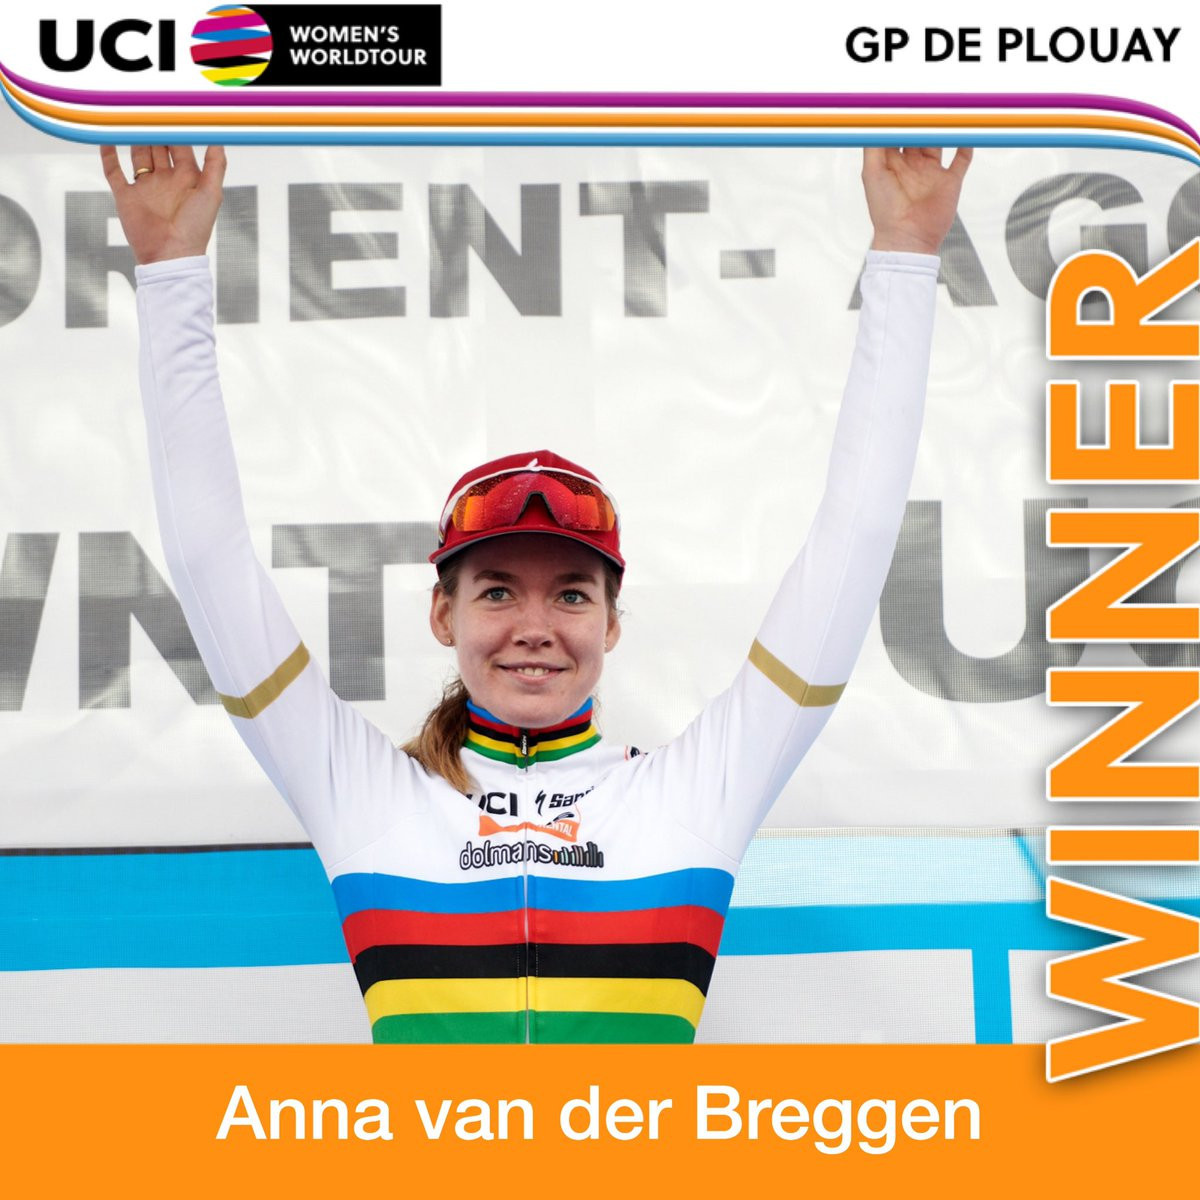 Van der Breggen triumphs at GP de Plouay